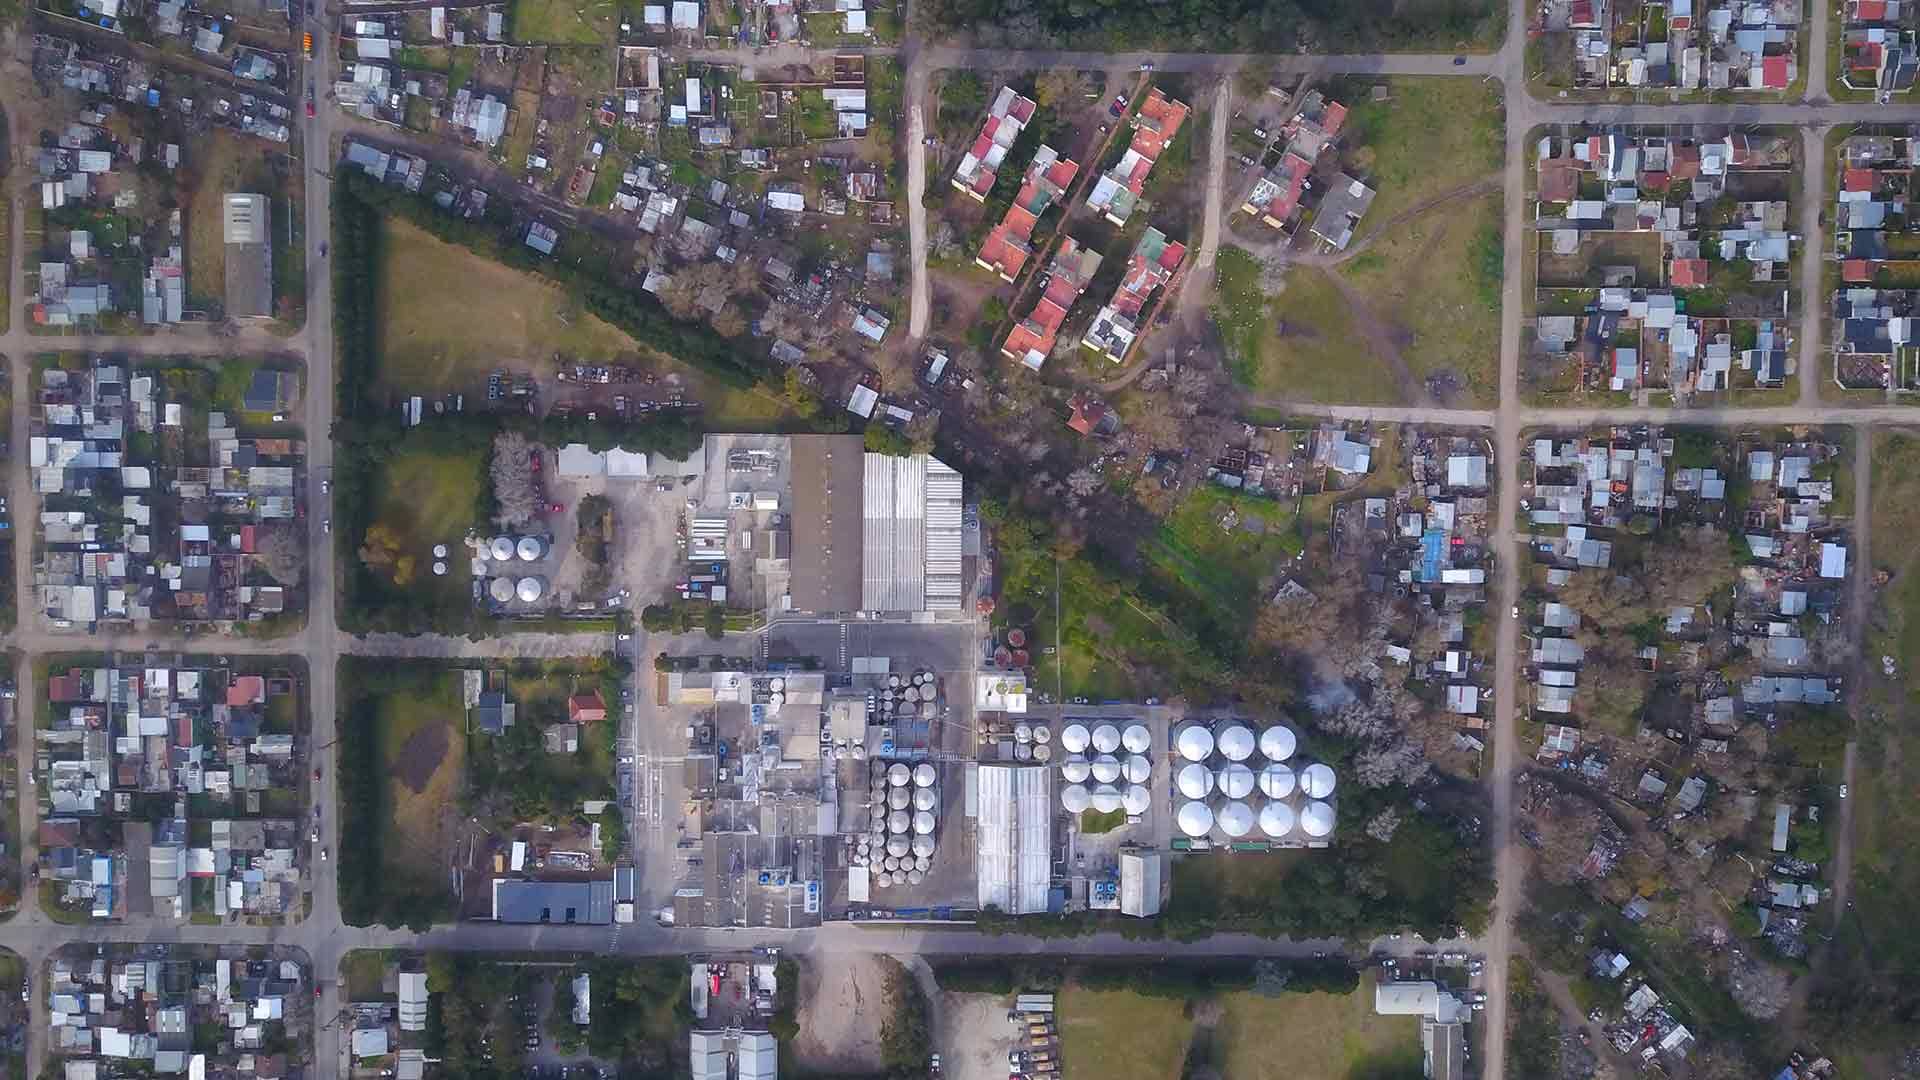 Vista aerea planta industrial